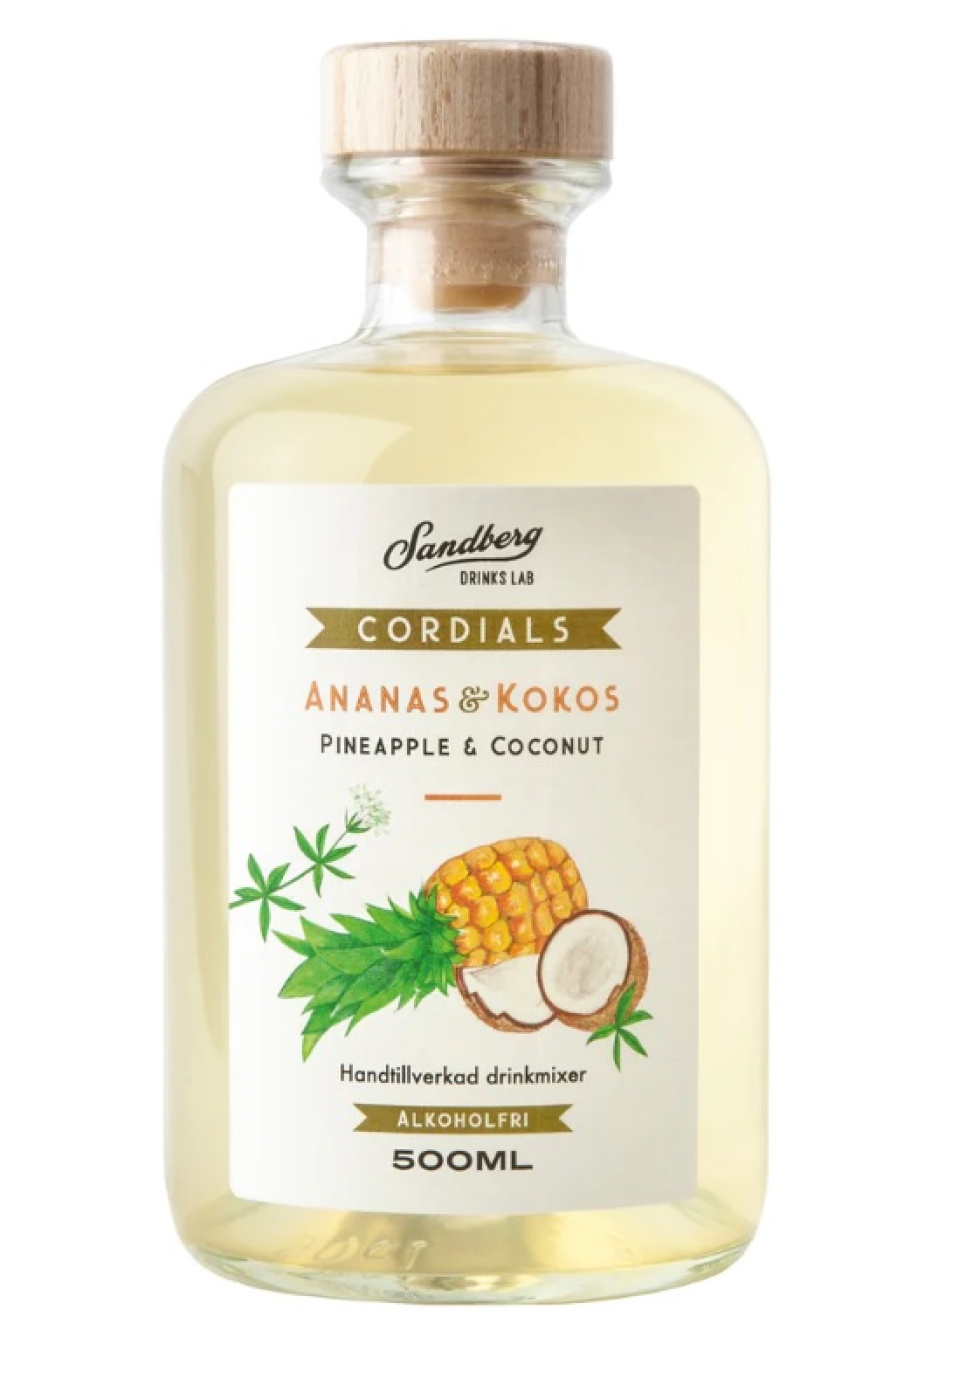 Cordials, ananas ja kookos - Sandberg Drinks Lab ryhmässä Baari & Viini / Baaritarvikkeet / Muut baaritarvikkeet @ KitchenLab (1821-27047)